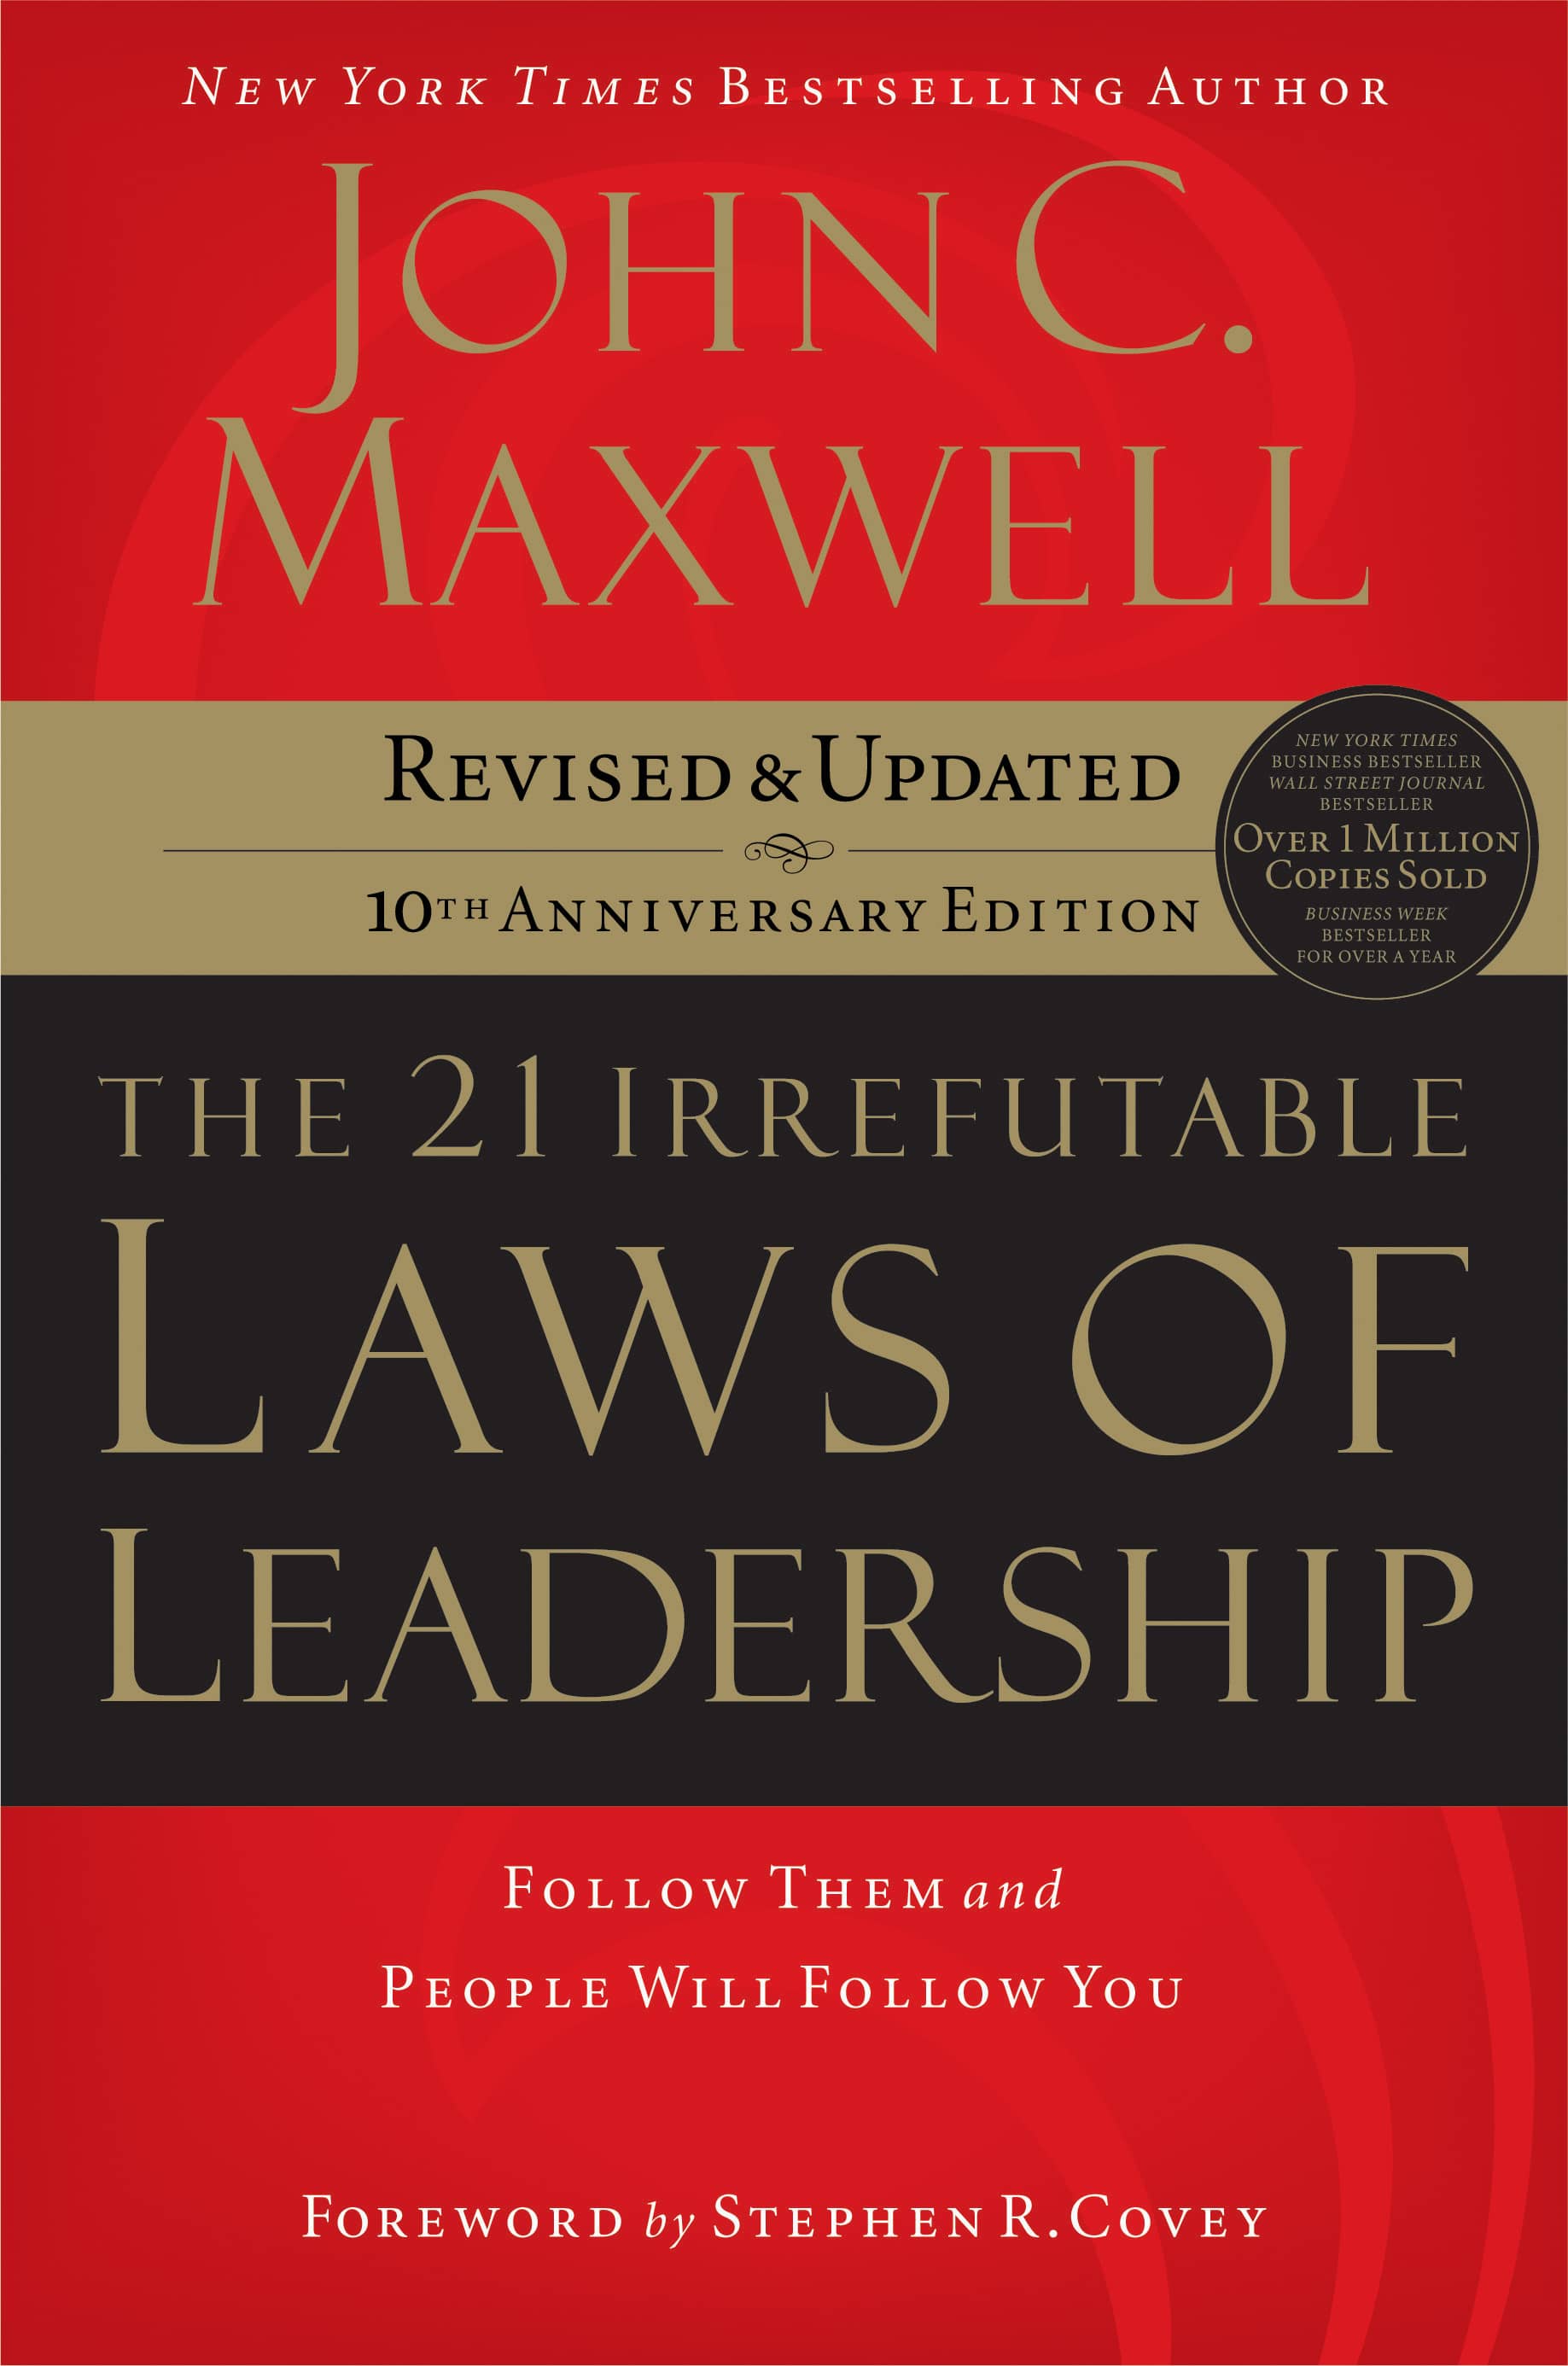 maxwell, leider, leiderschap, leader, leadership, führung, manager